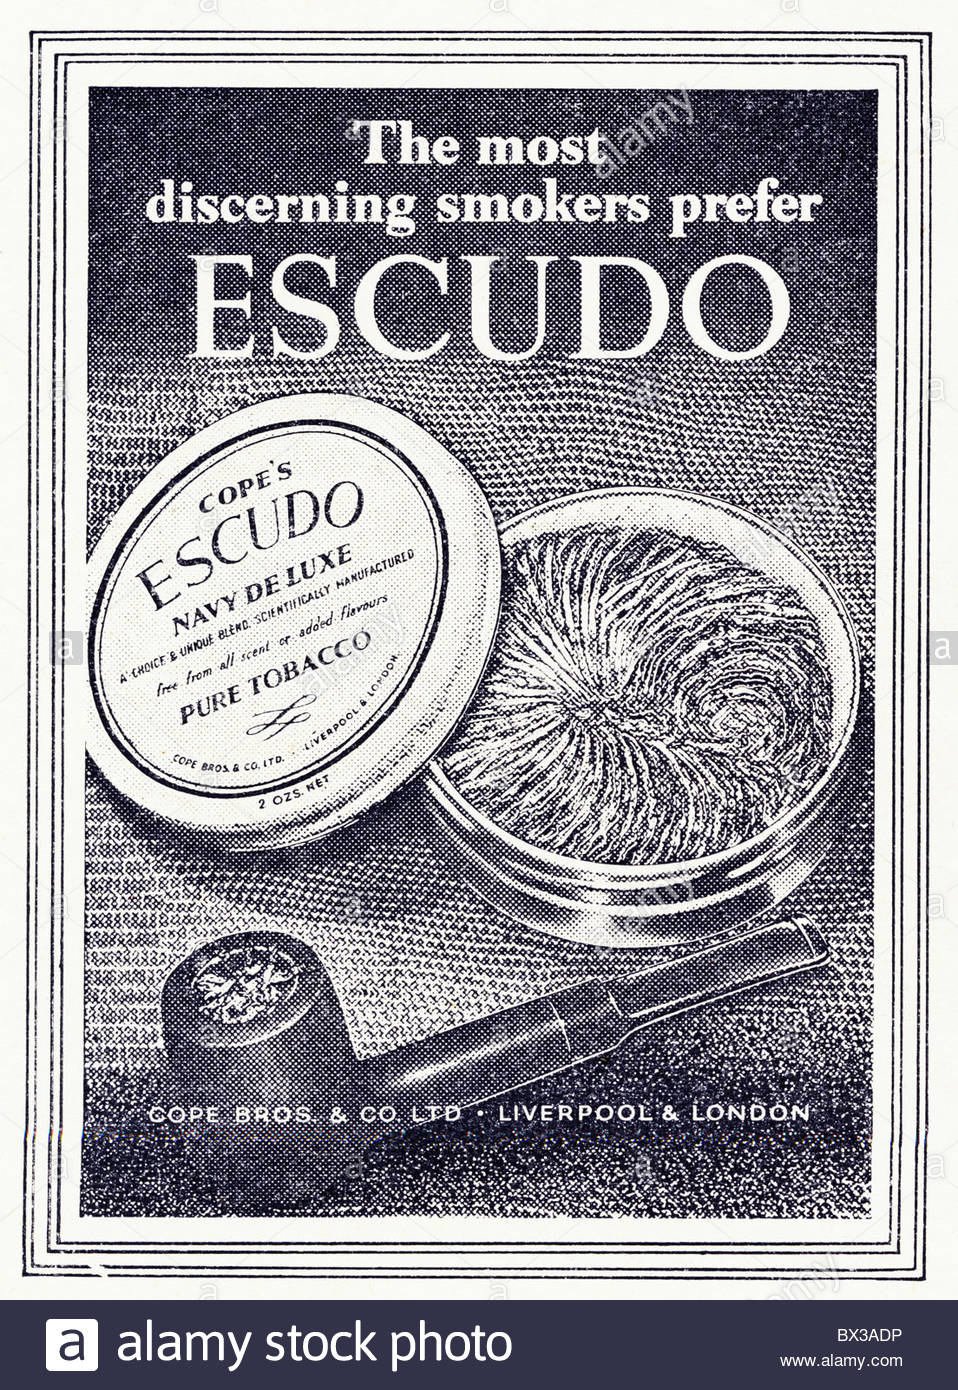 Le tabac et la pipe à travers les âges et images publicitaires anciennes - Page 51 Escudo10